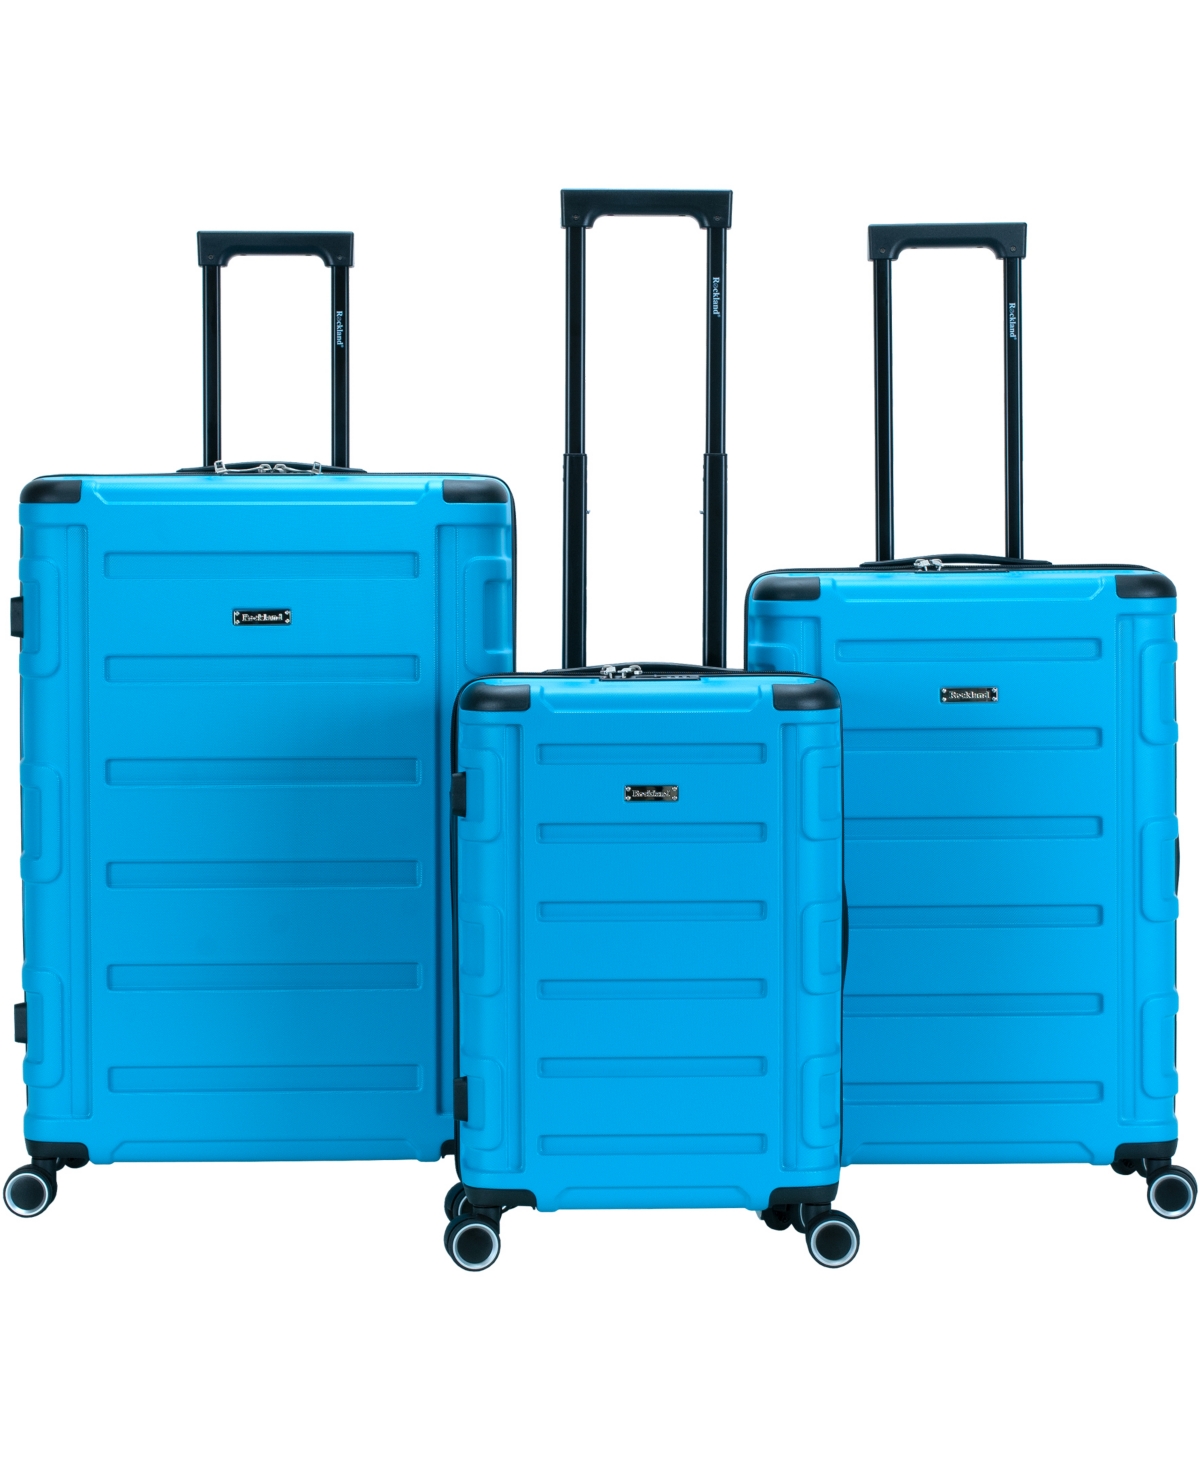 Boston 3pc Hardside Luggage Set - Navy